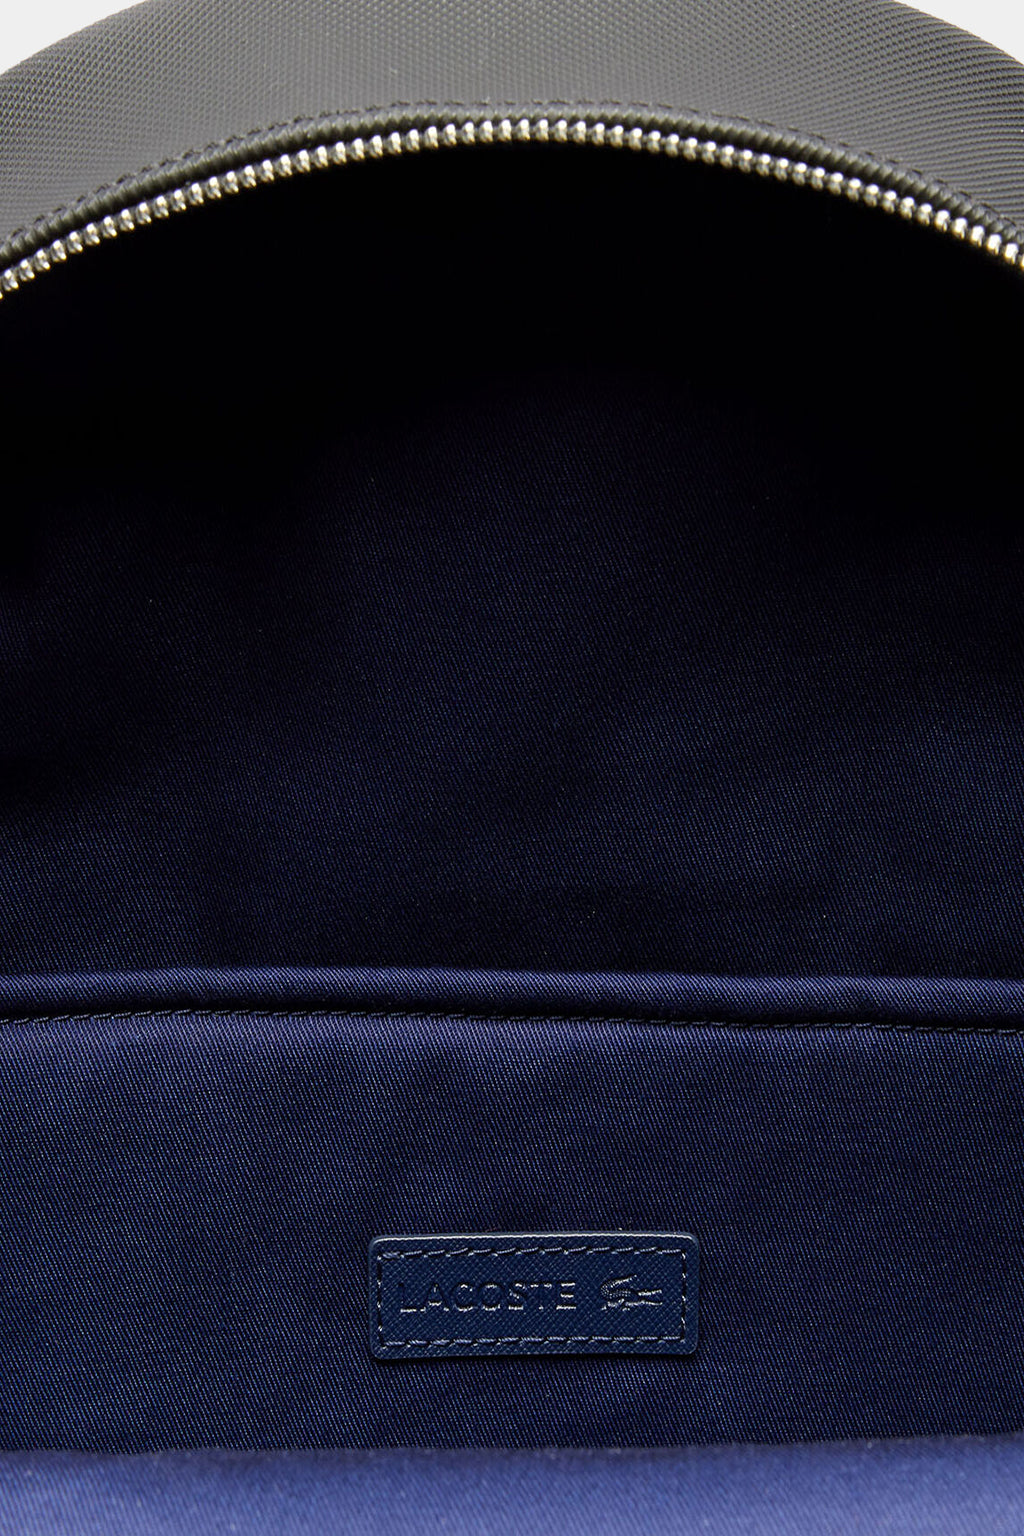 Lacoste - Men's Classic Petit Piqué Backpack